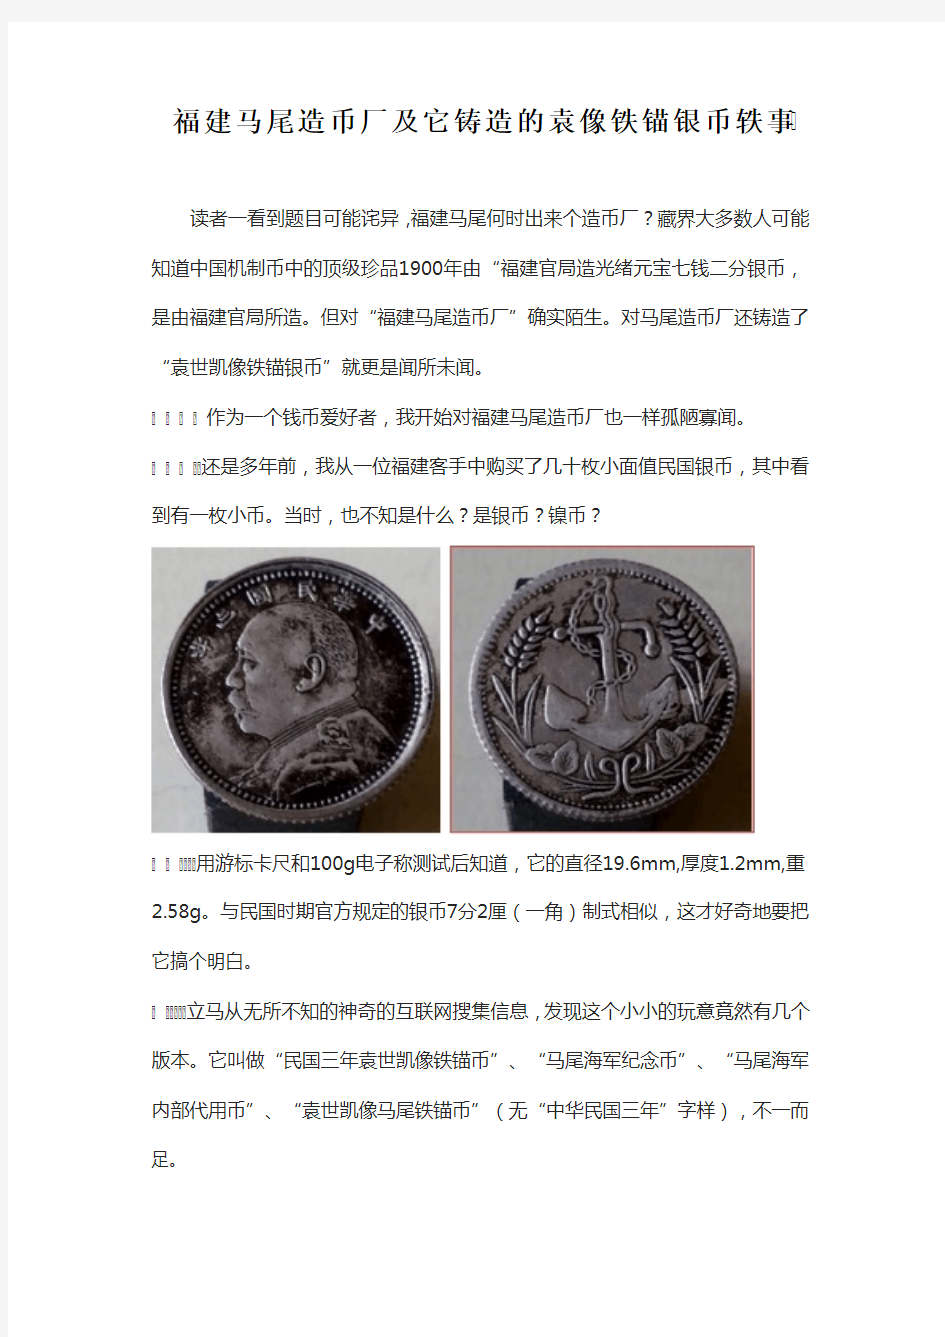 福建马尾造币厂和它铸造的袁世凯像铁锚币